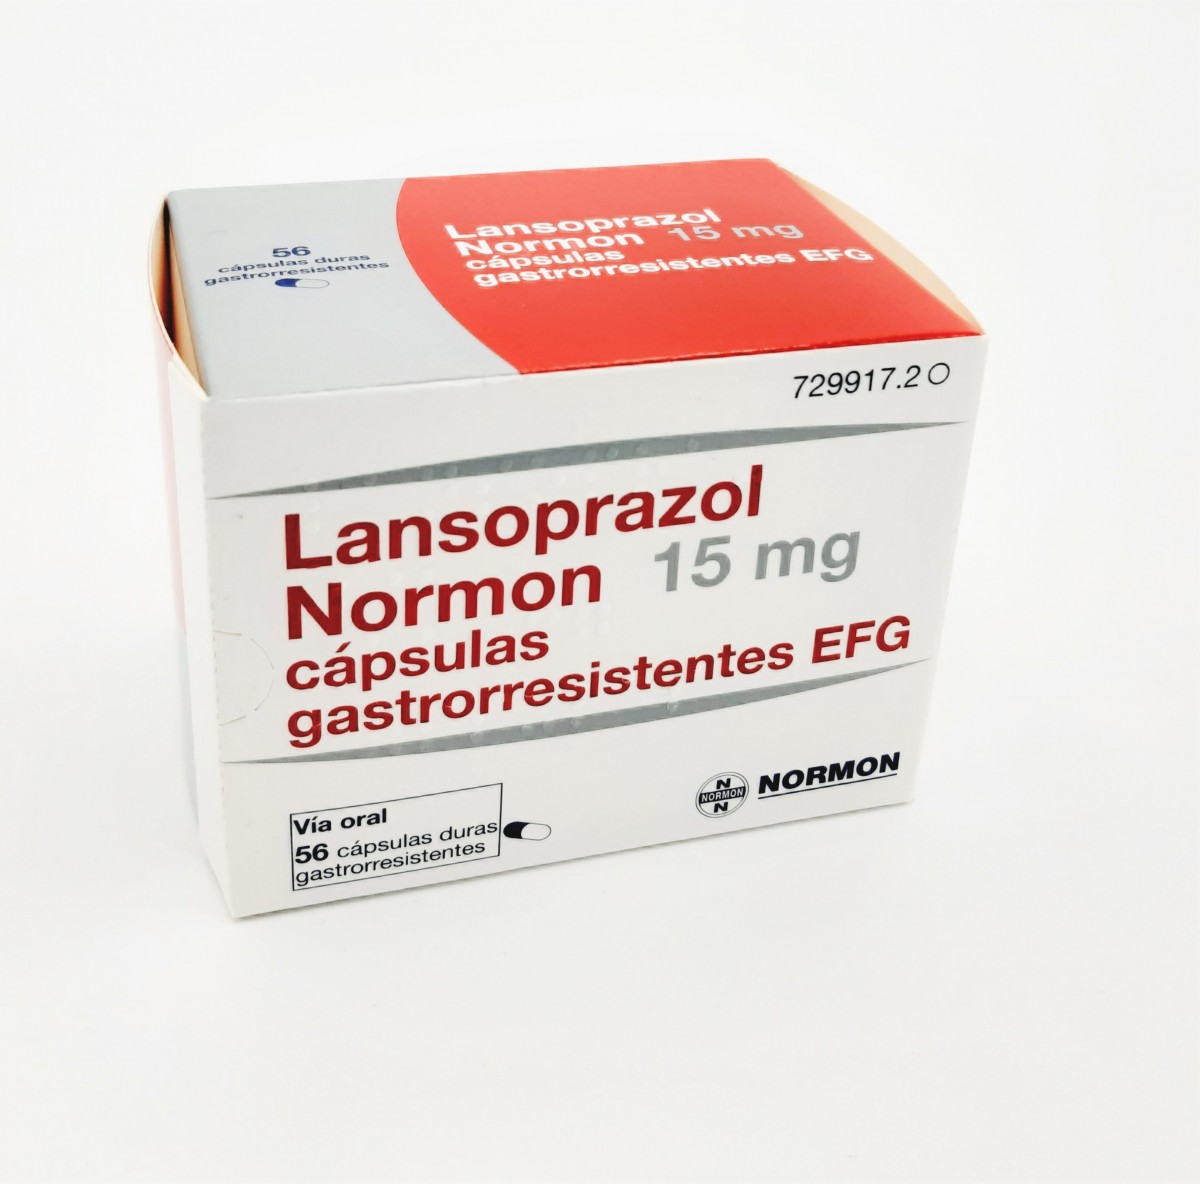 LANSOPRAZOL NORMON 15 mg CAPSULAS GASTRORRESISTENTES EFG, 28 cápsulas fotografía del envase.